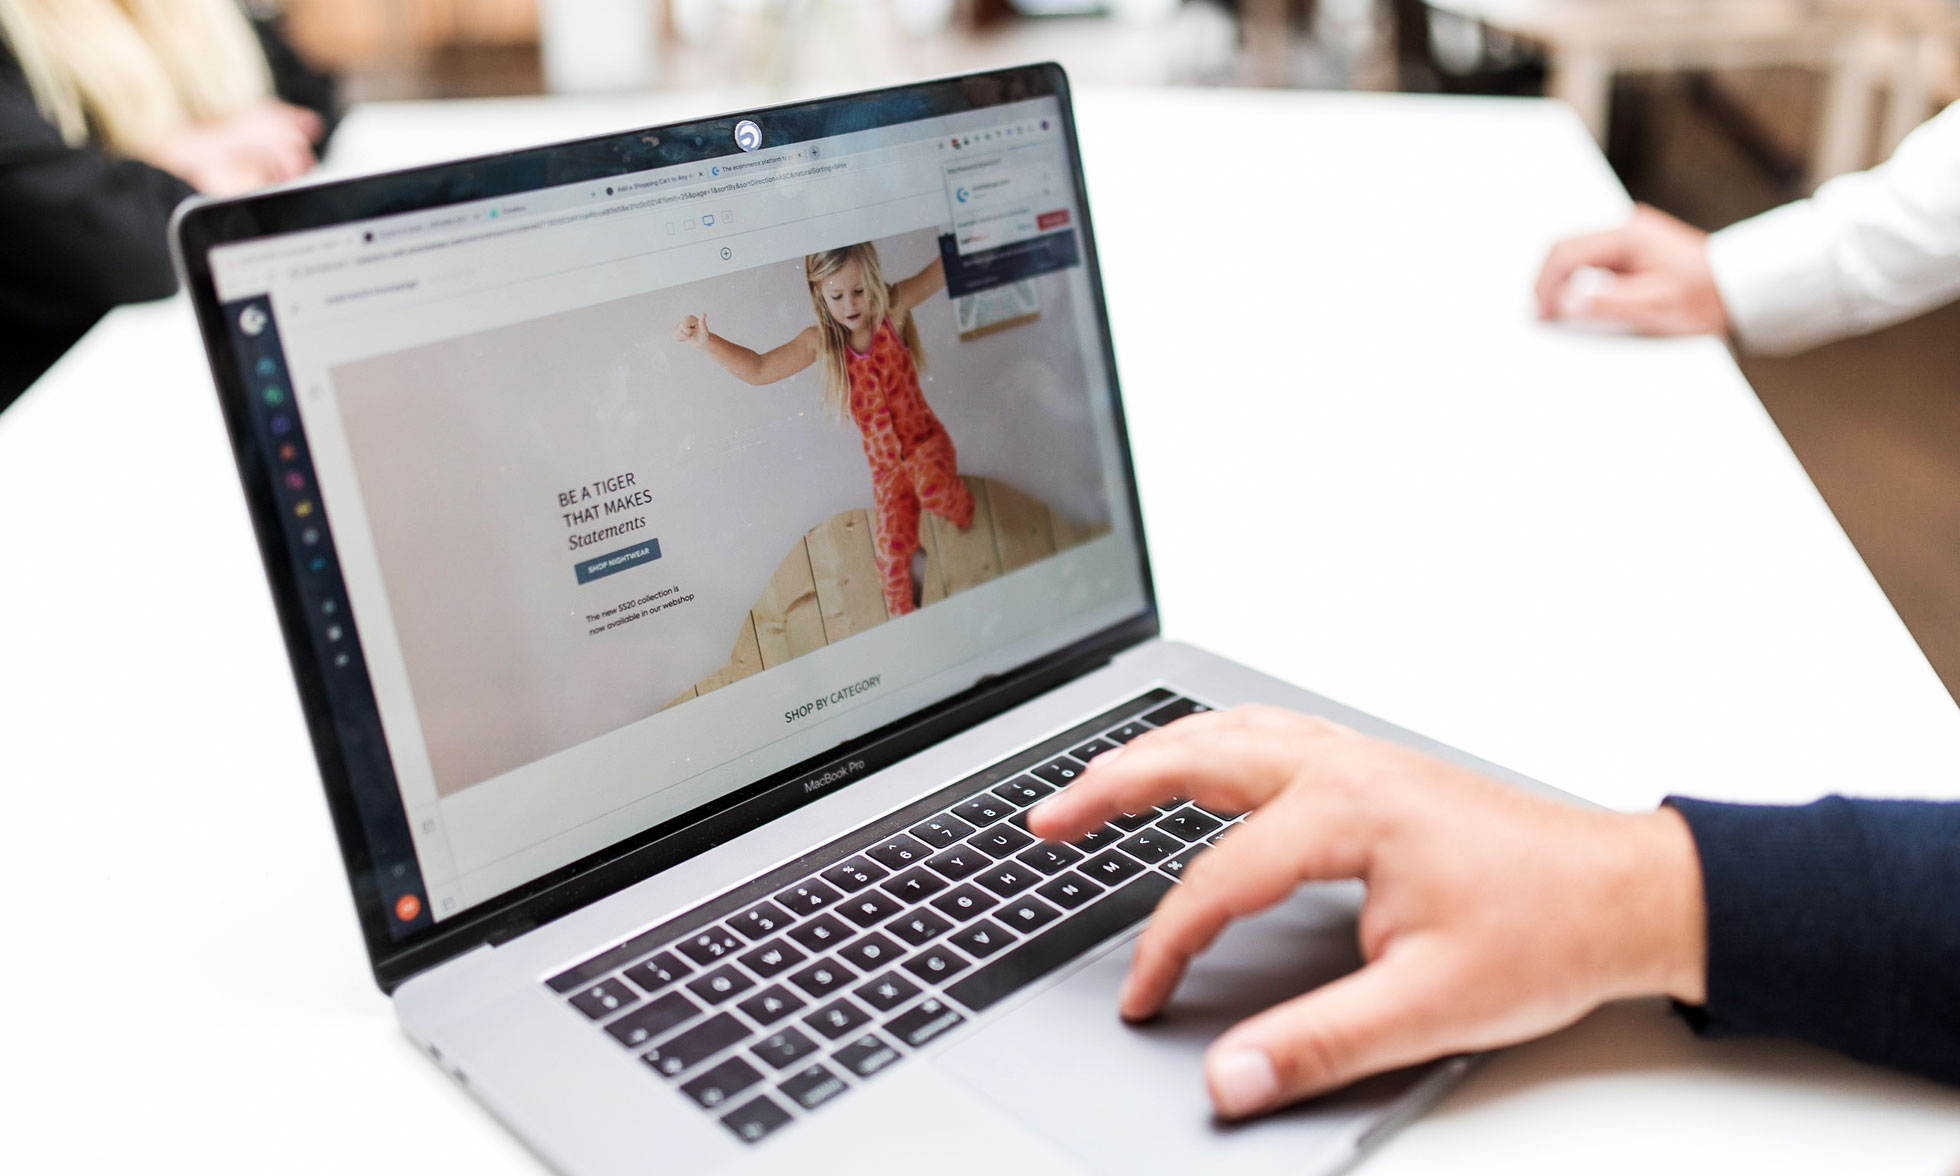 Een hand op een trackpad van een laptop toont een kinderkledingwebsite